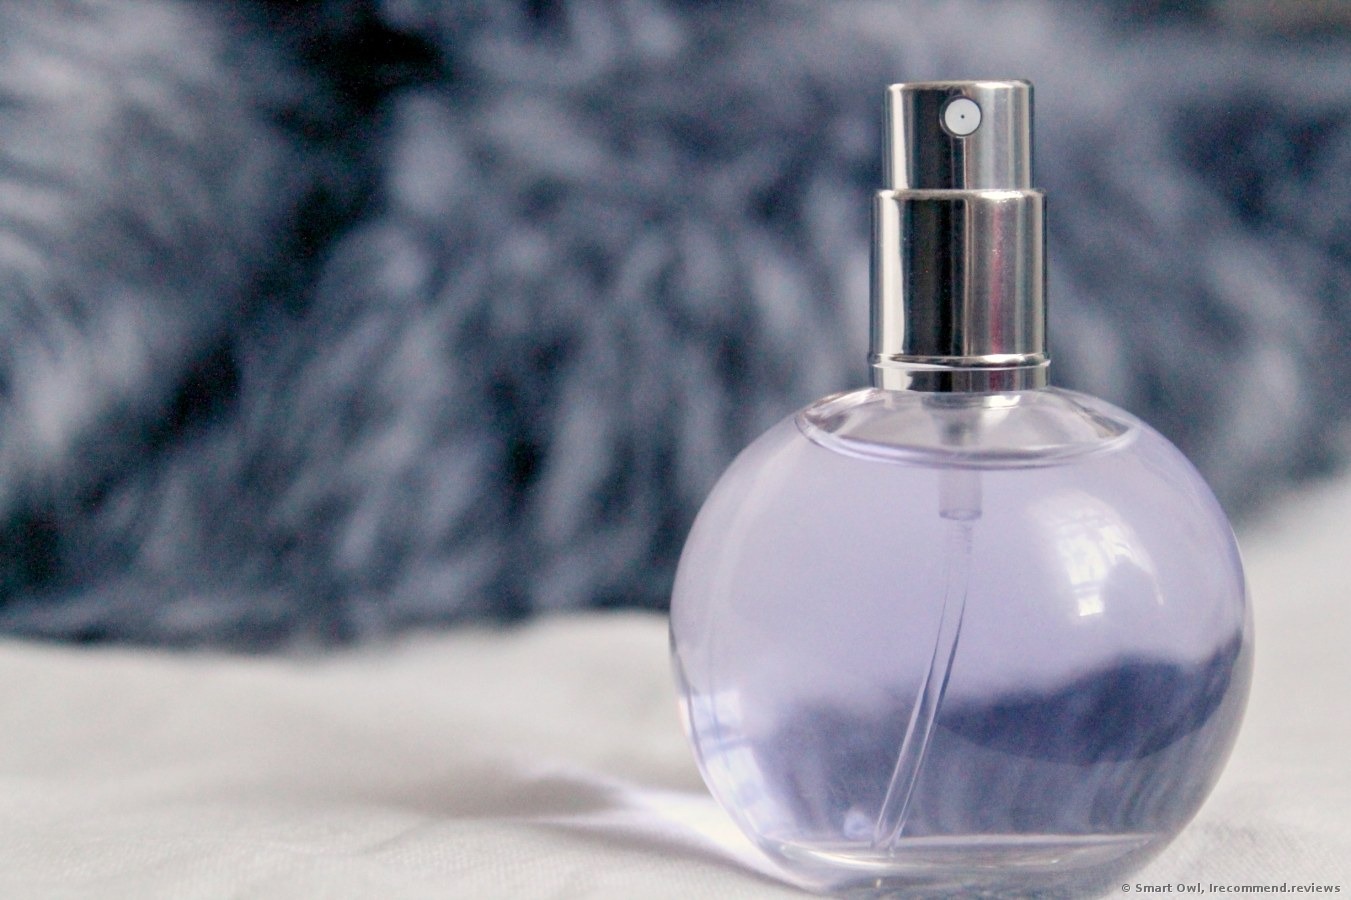 Lanvin Eclat D'arpege Fragrance Review